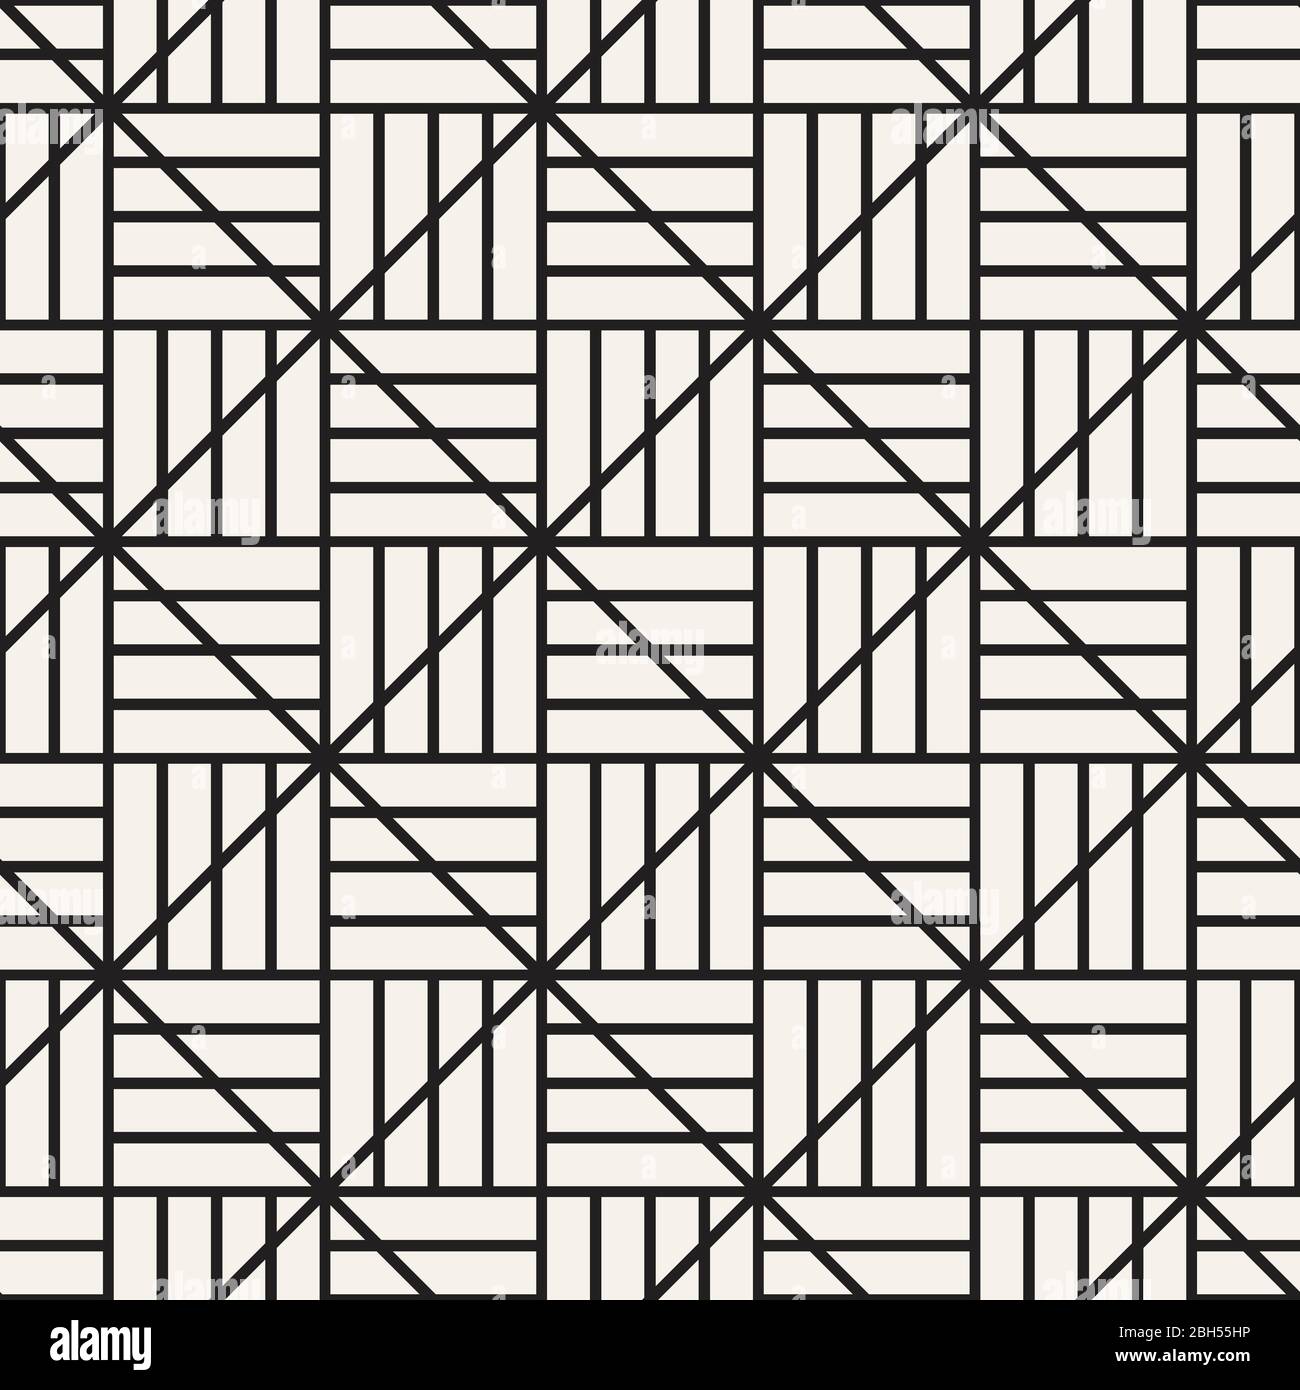 Vektor nahtlose Gittermuster. Moderne abstrakte Textur. Sich wiederholende geometrische Fliesen aus quadratischen und Rauten Elementen. Stock Vektor